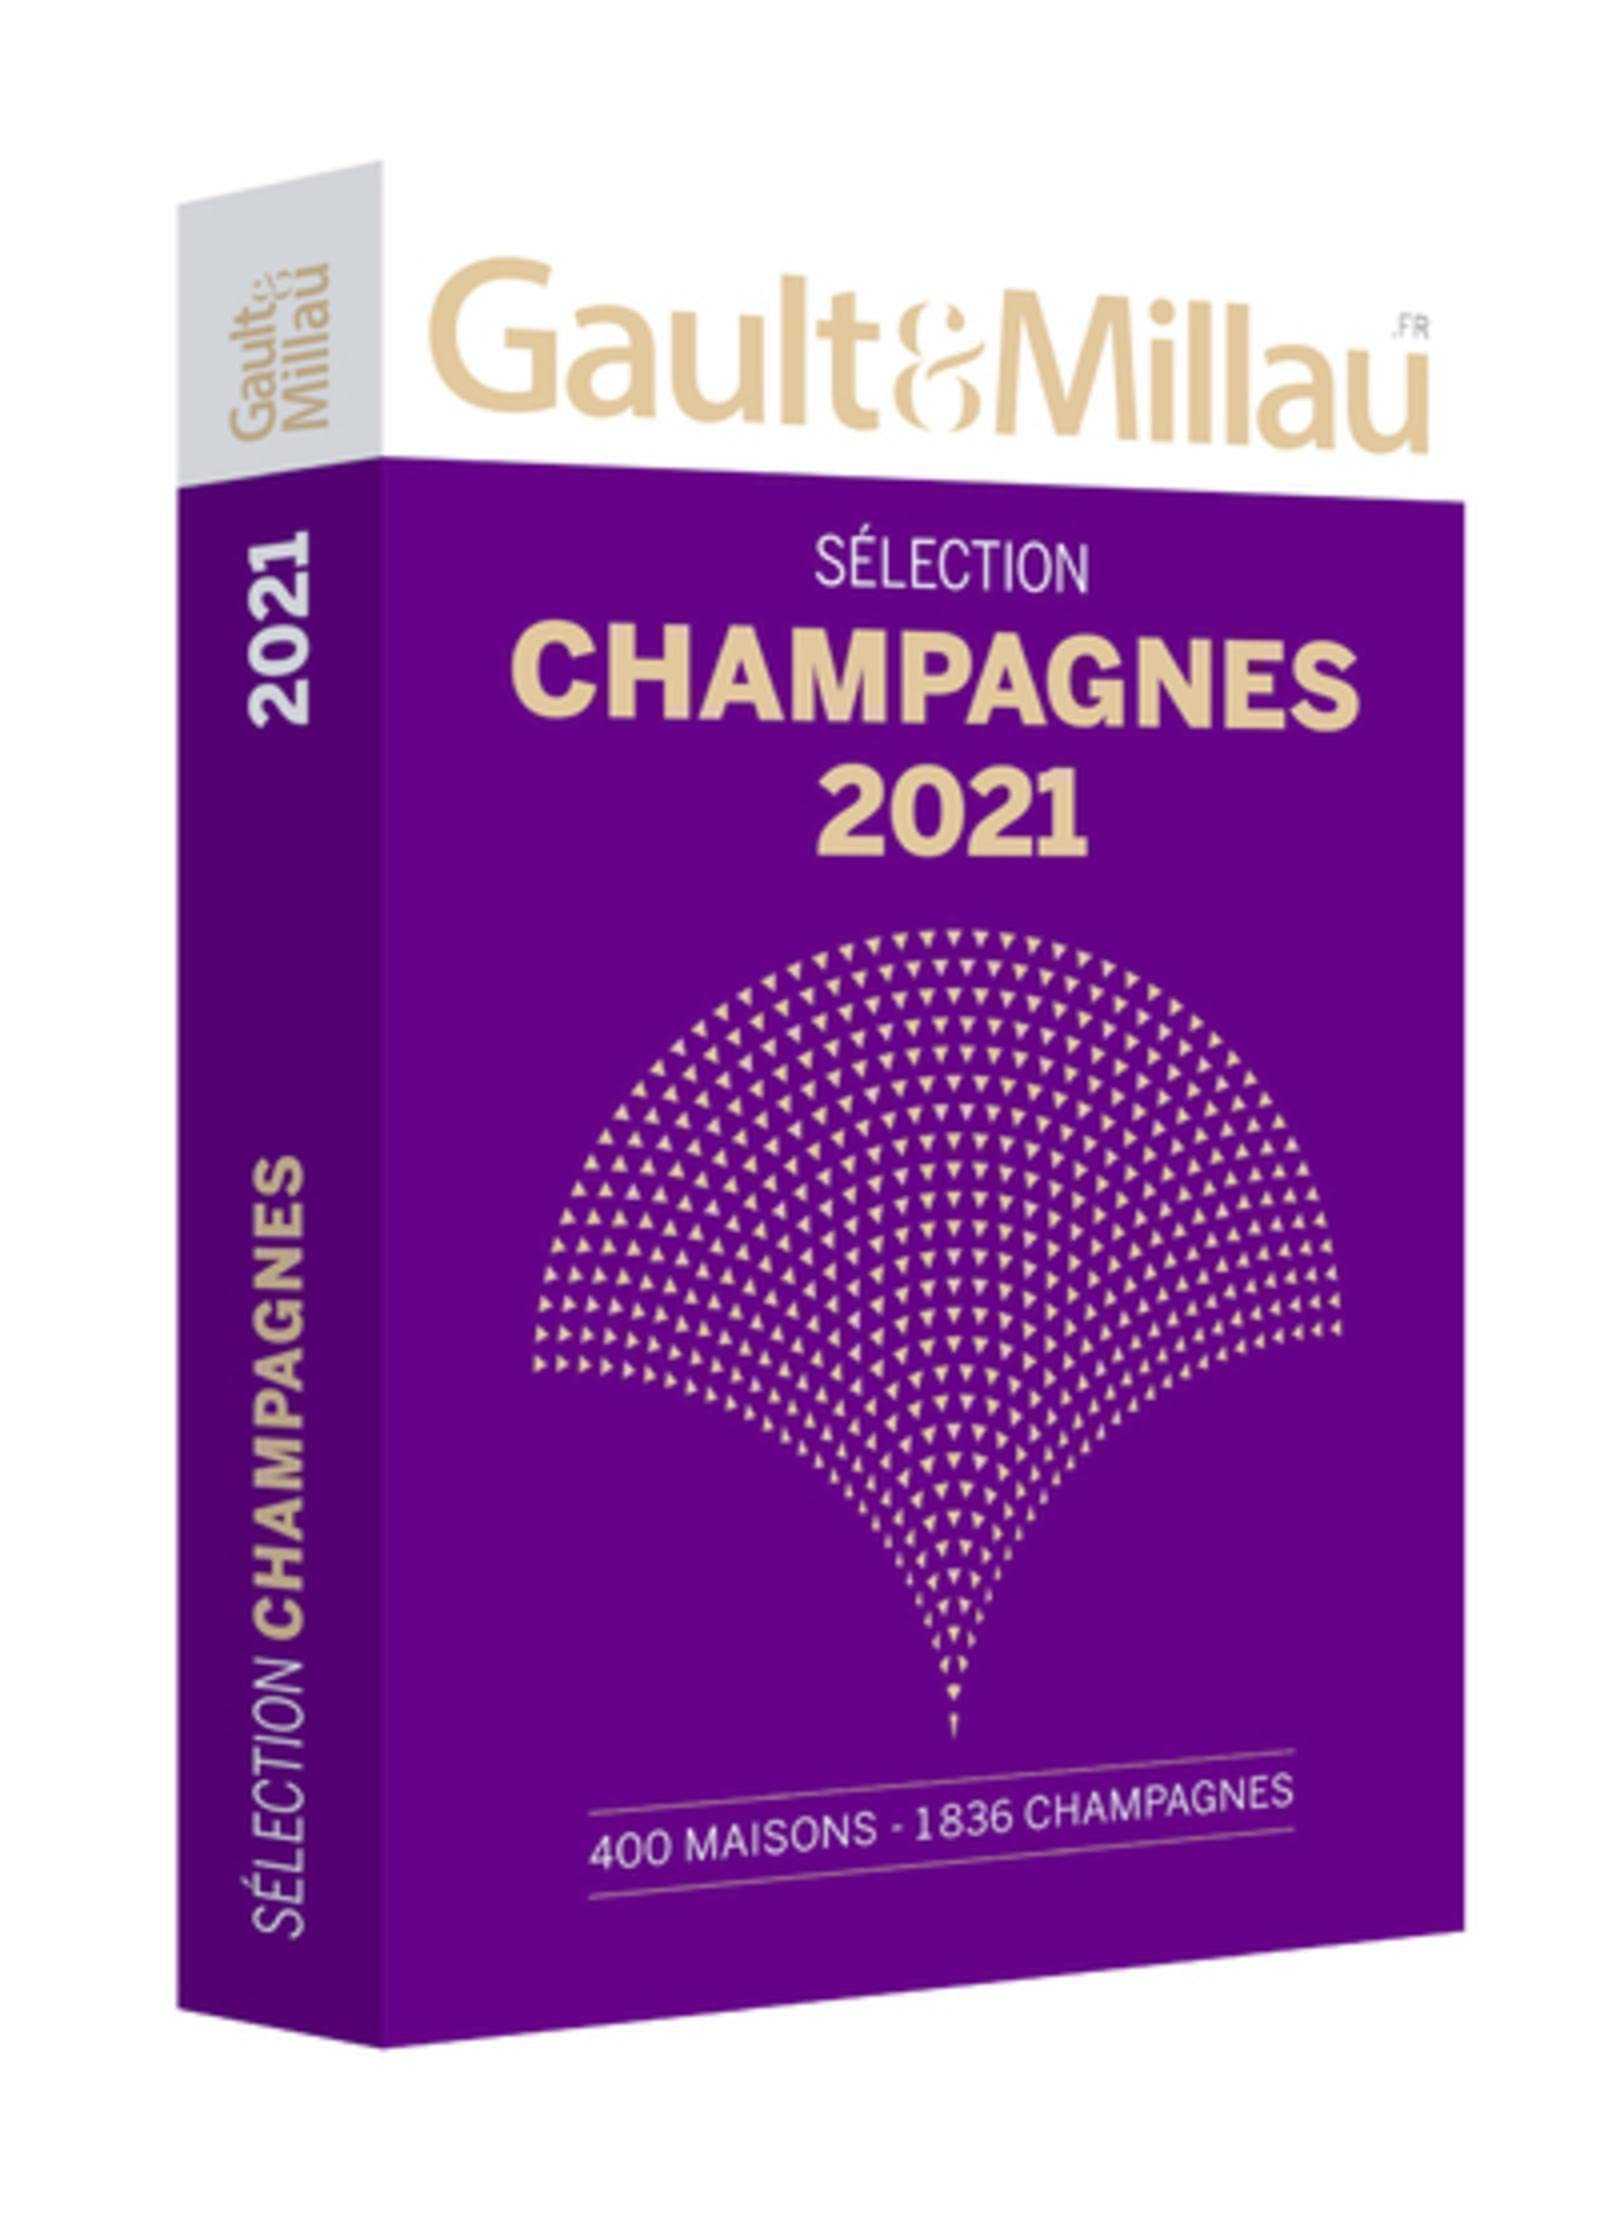 GUIDE DES CHAMPAGNES 2021: 400 Maisons - 1836 Champagnes